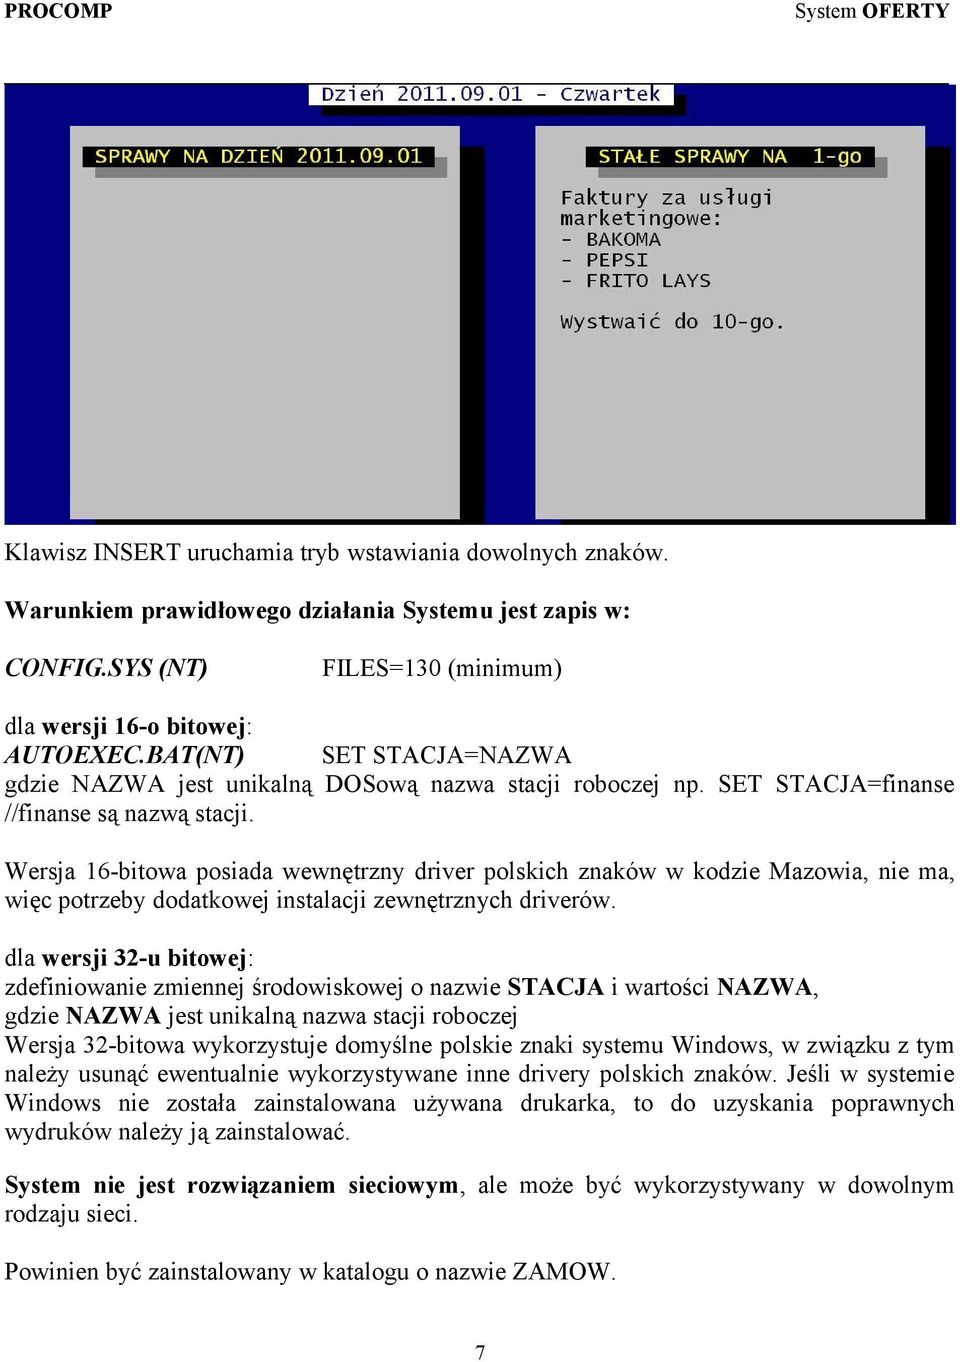 Wersja 16-bitowa posiada wewnętrzny driver polskich znaków w kodzie Mazowia, nie ma, więc potrzeby dodatkowej instalacji zewnętrznych driverów.